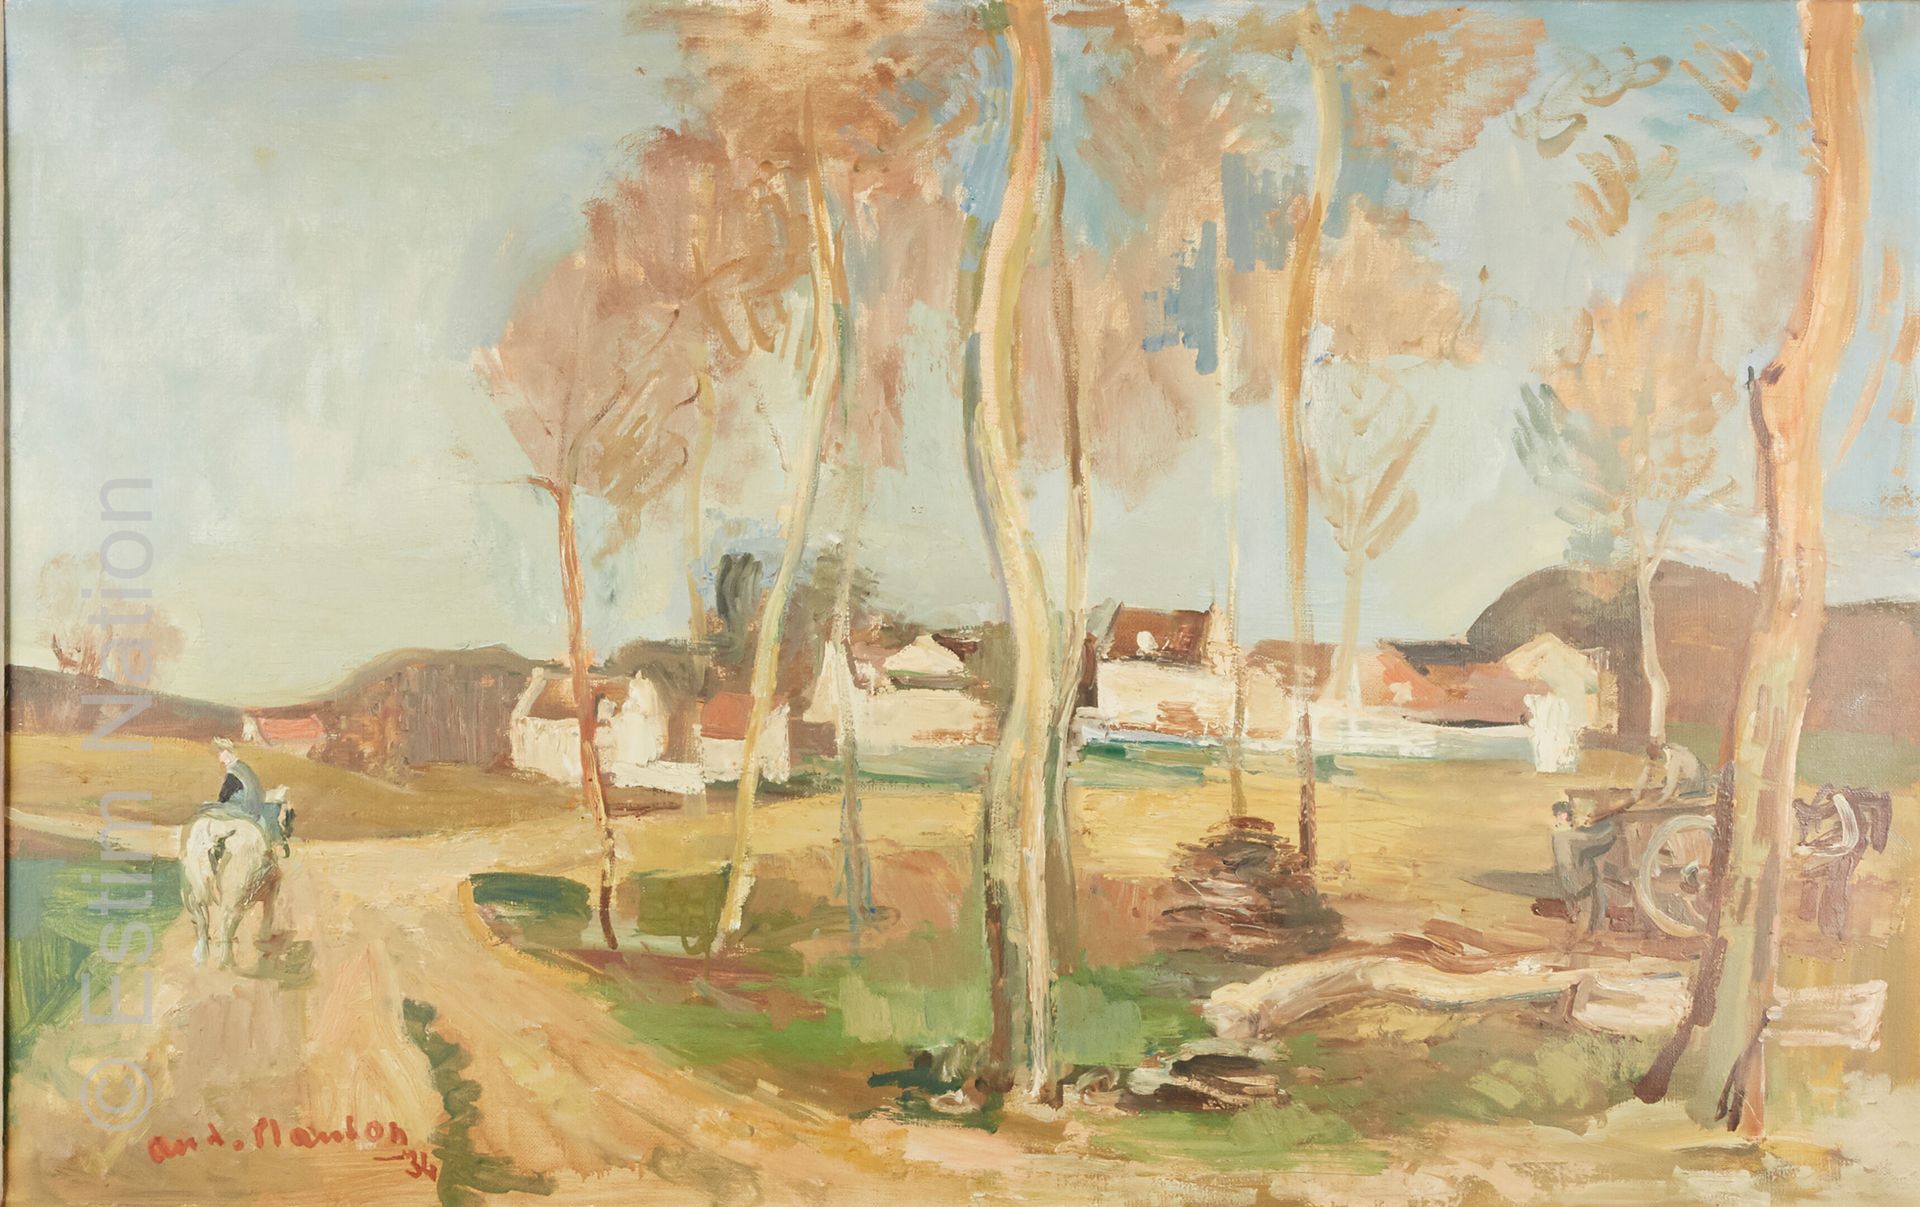 ART DU XXE SIECLE - PLANSON André PLANSON (1898-1981)

"Peasants of Ile de Franc&hellip;